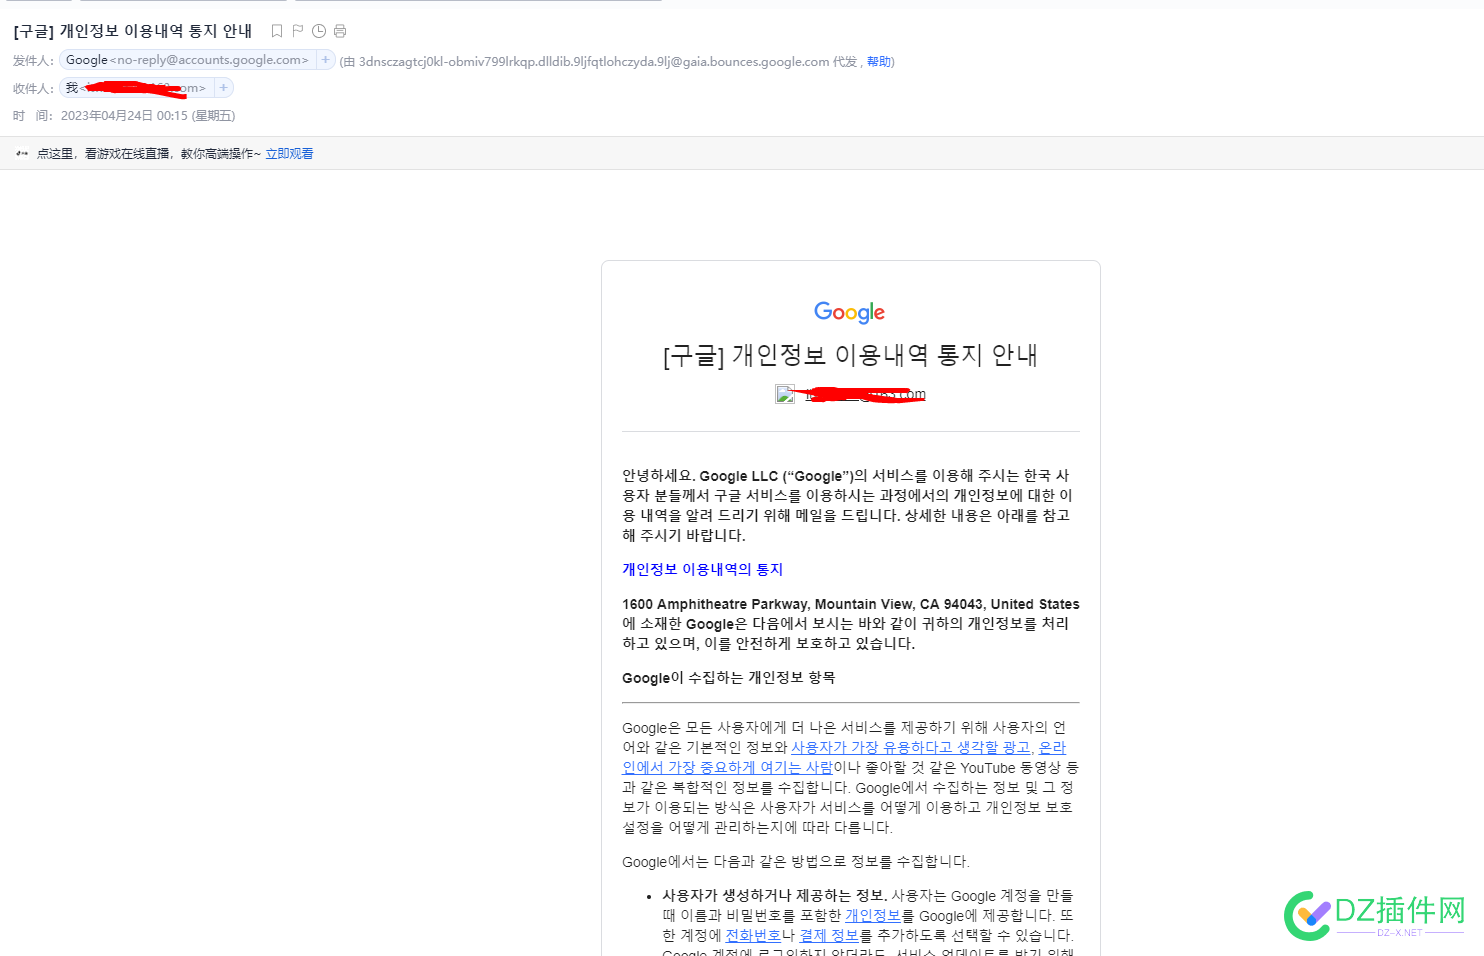 谷歌给我发的邮件，用的韩文，意思是提示韩国公民怎么。。。 谷歌,给我,邮件,韩文,意思